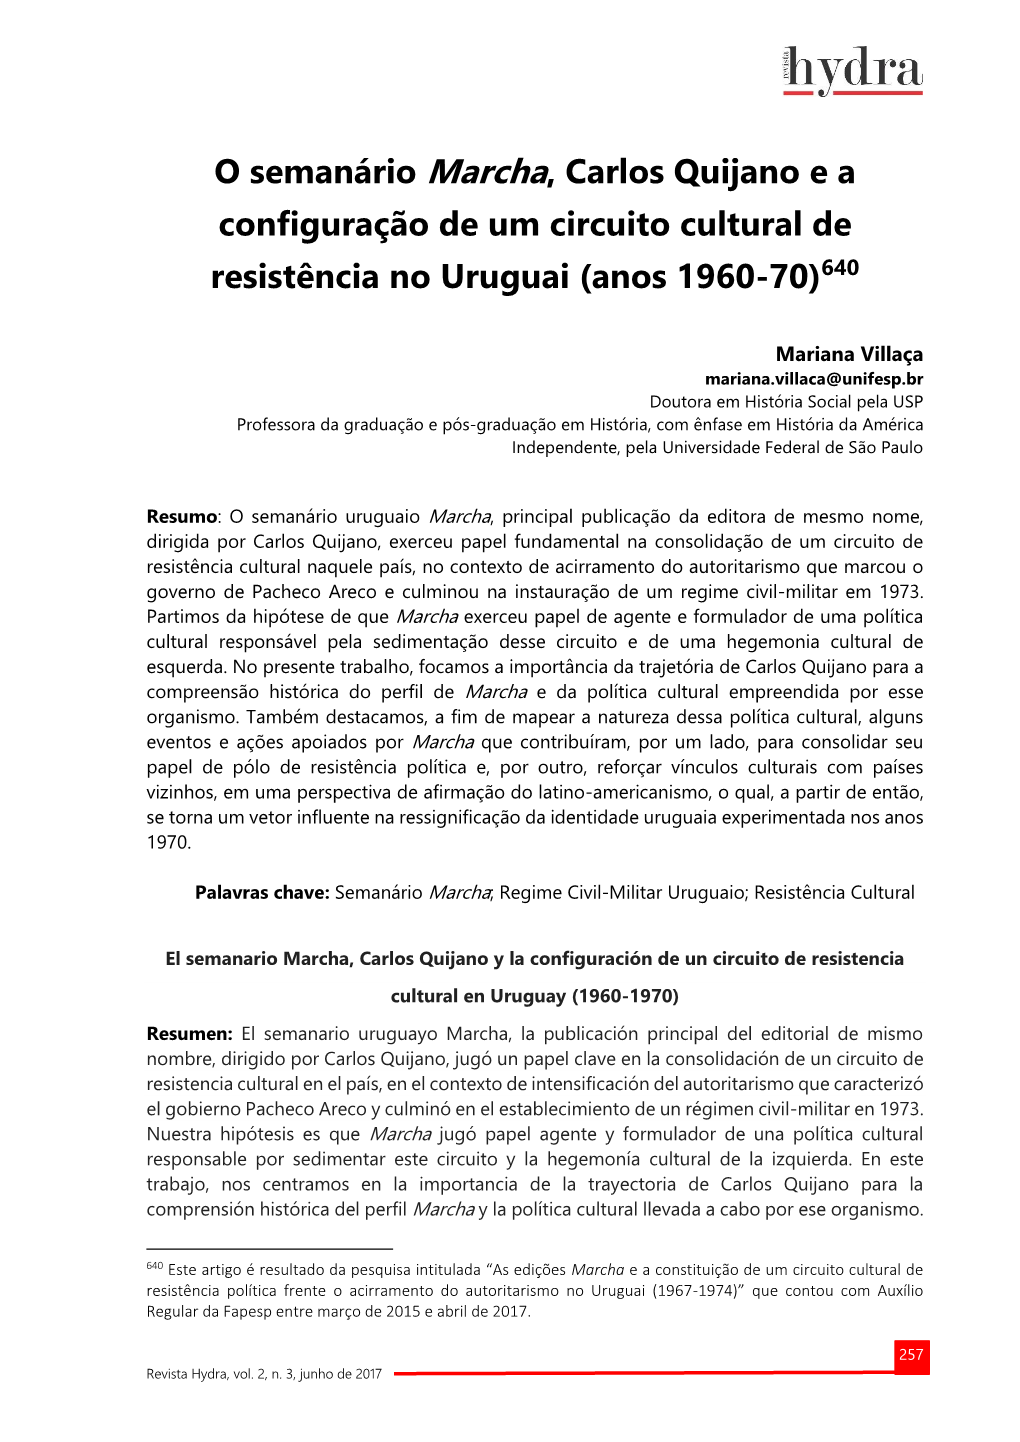 O Semanário Marcha, Carlos Quijano E a Configuração De Um Circuito Cultural De Resistência No Uruguai (Anos 1960-70)640